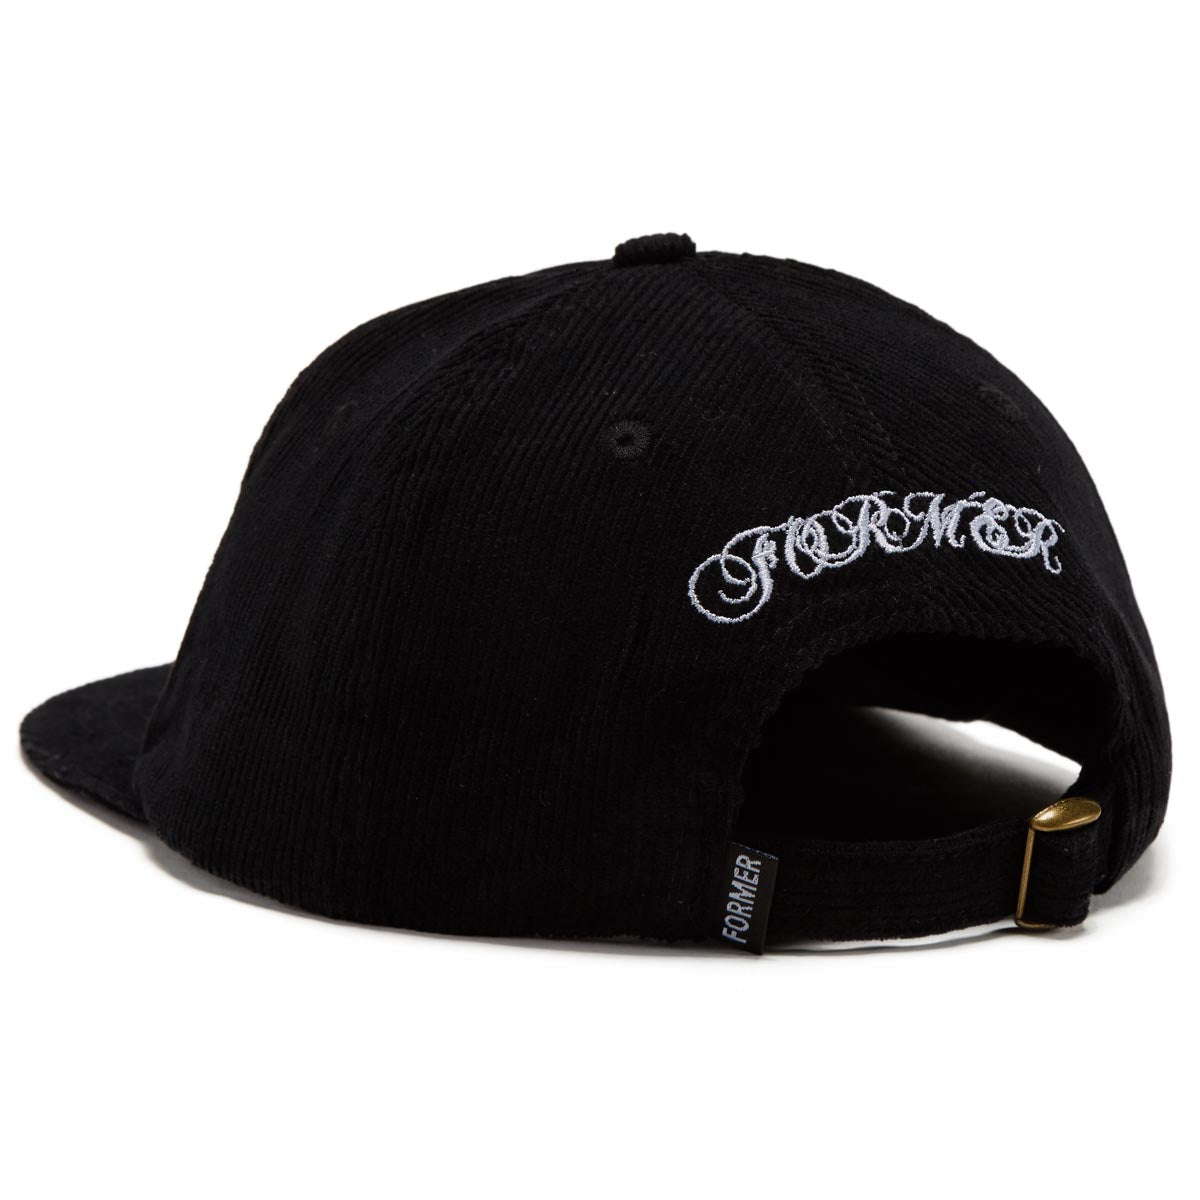 Former Valentine Cord Hat - Black image 2